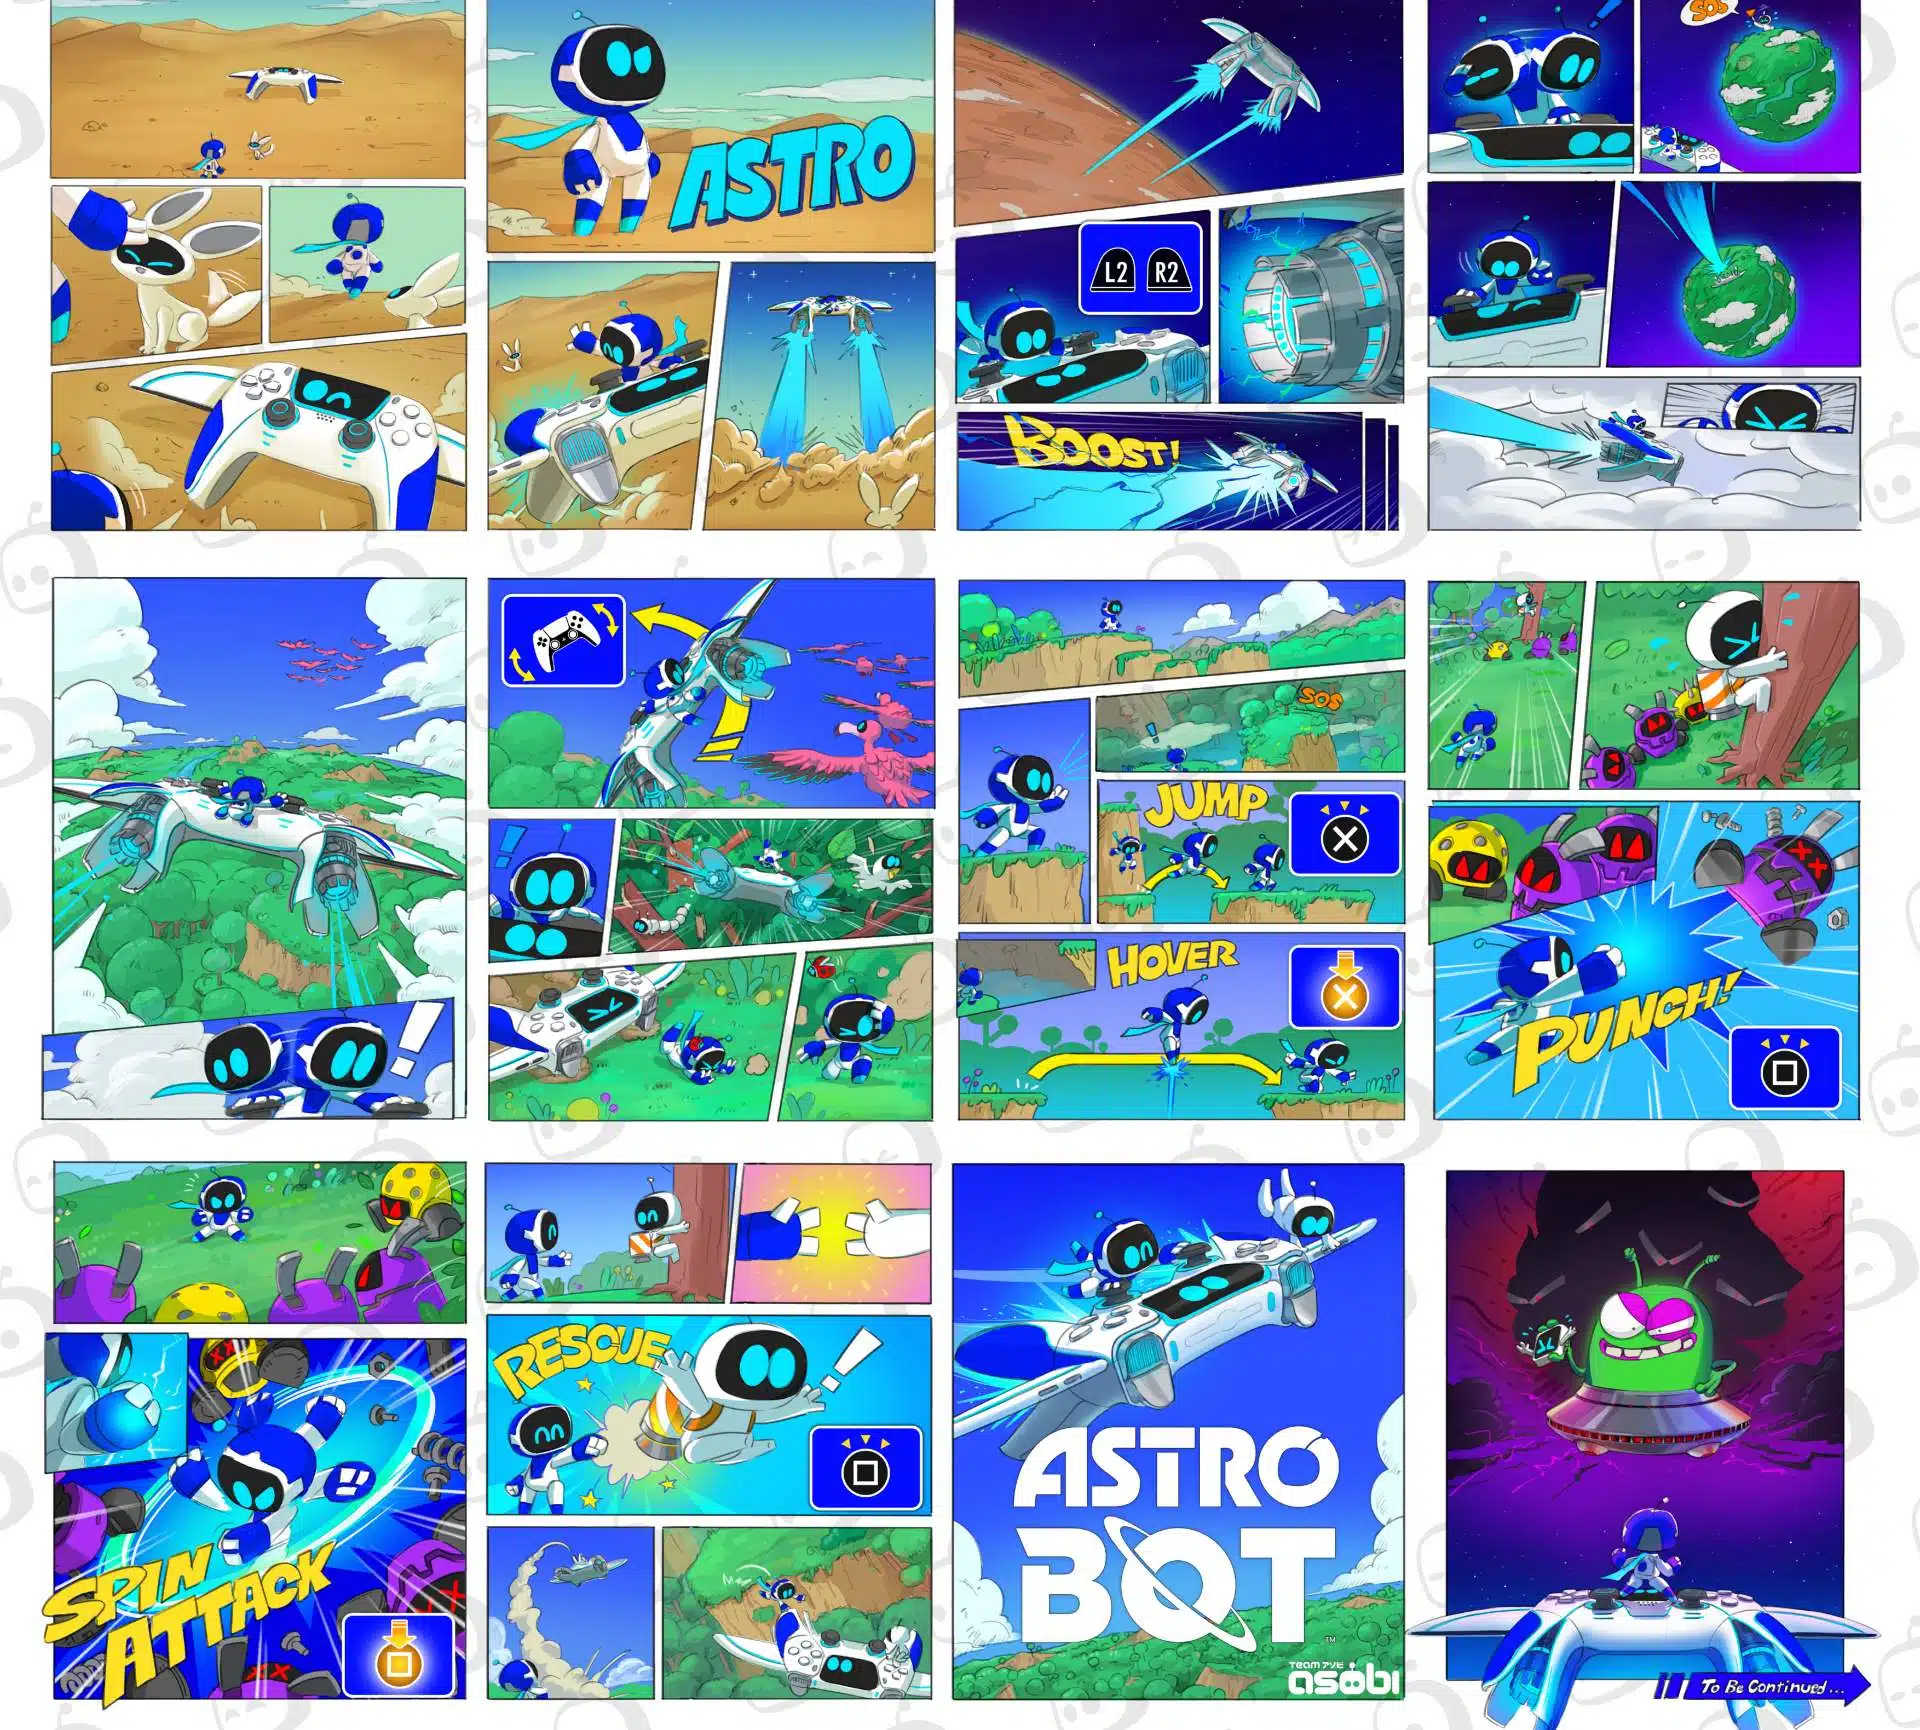 Poster de Astro Bot 2